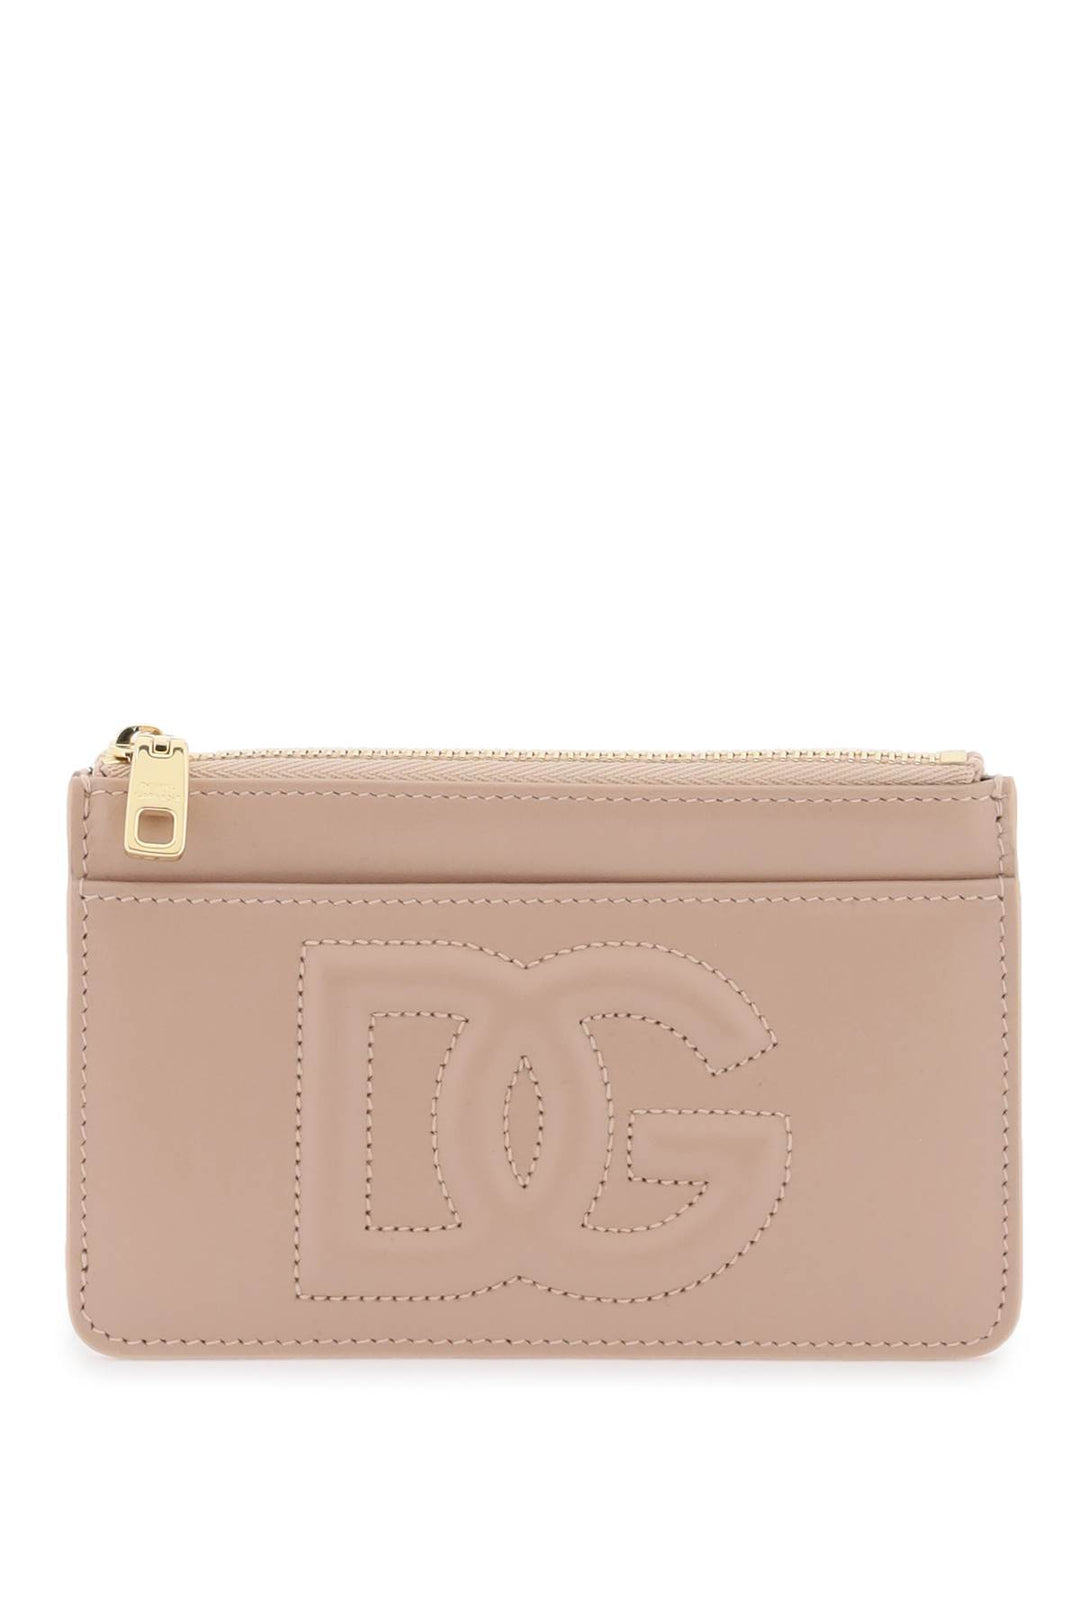 Porta Carte Con Logo Dg - Dolce & Gabbana - Donna